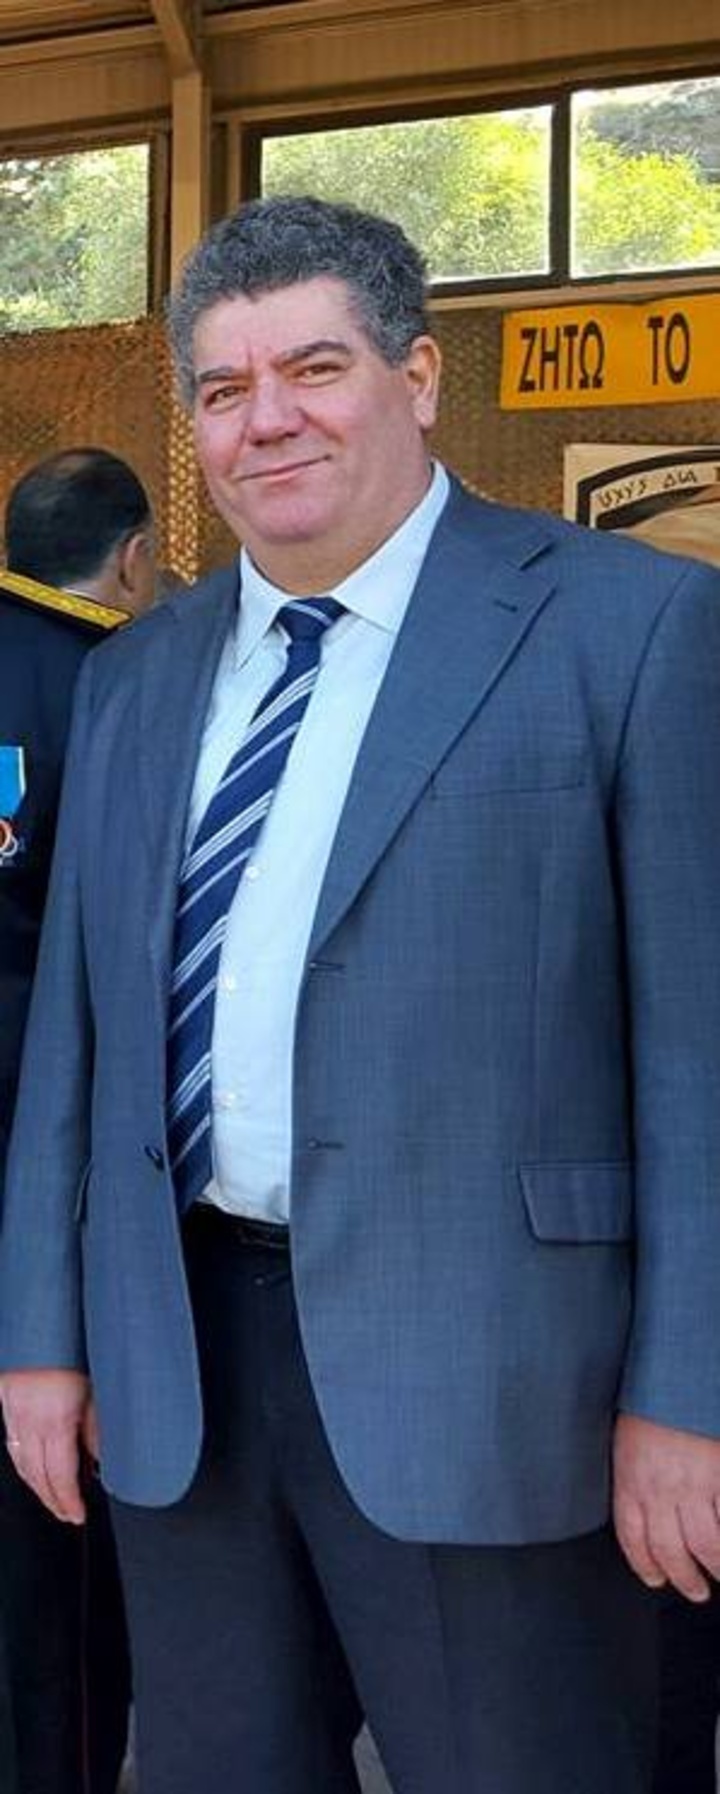 Ο Βασίλης Περίδης θα αναμετρηθεί με τον Σάββα Λυριστή στον επόμενο γύρο των εκλογών του Δικηγορικού Συλλόγου